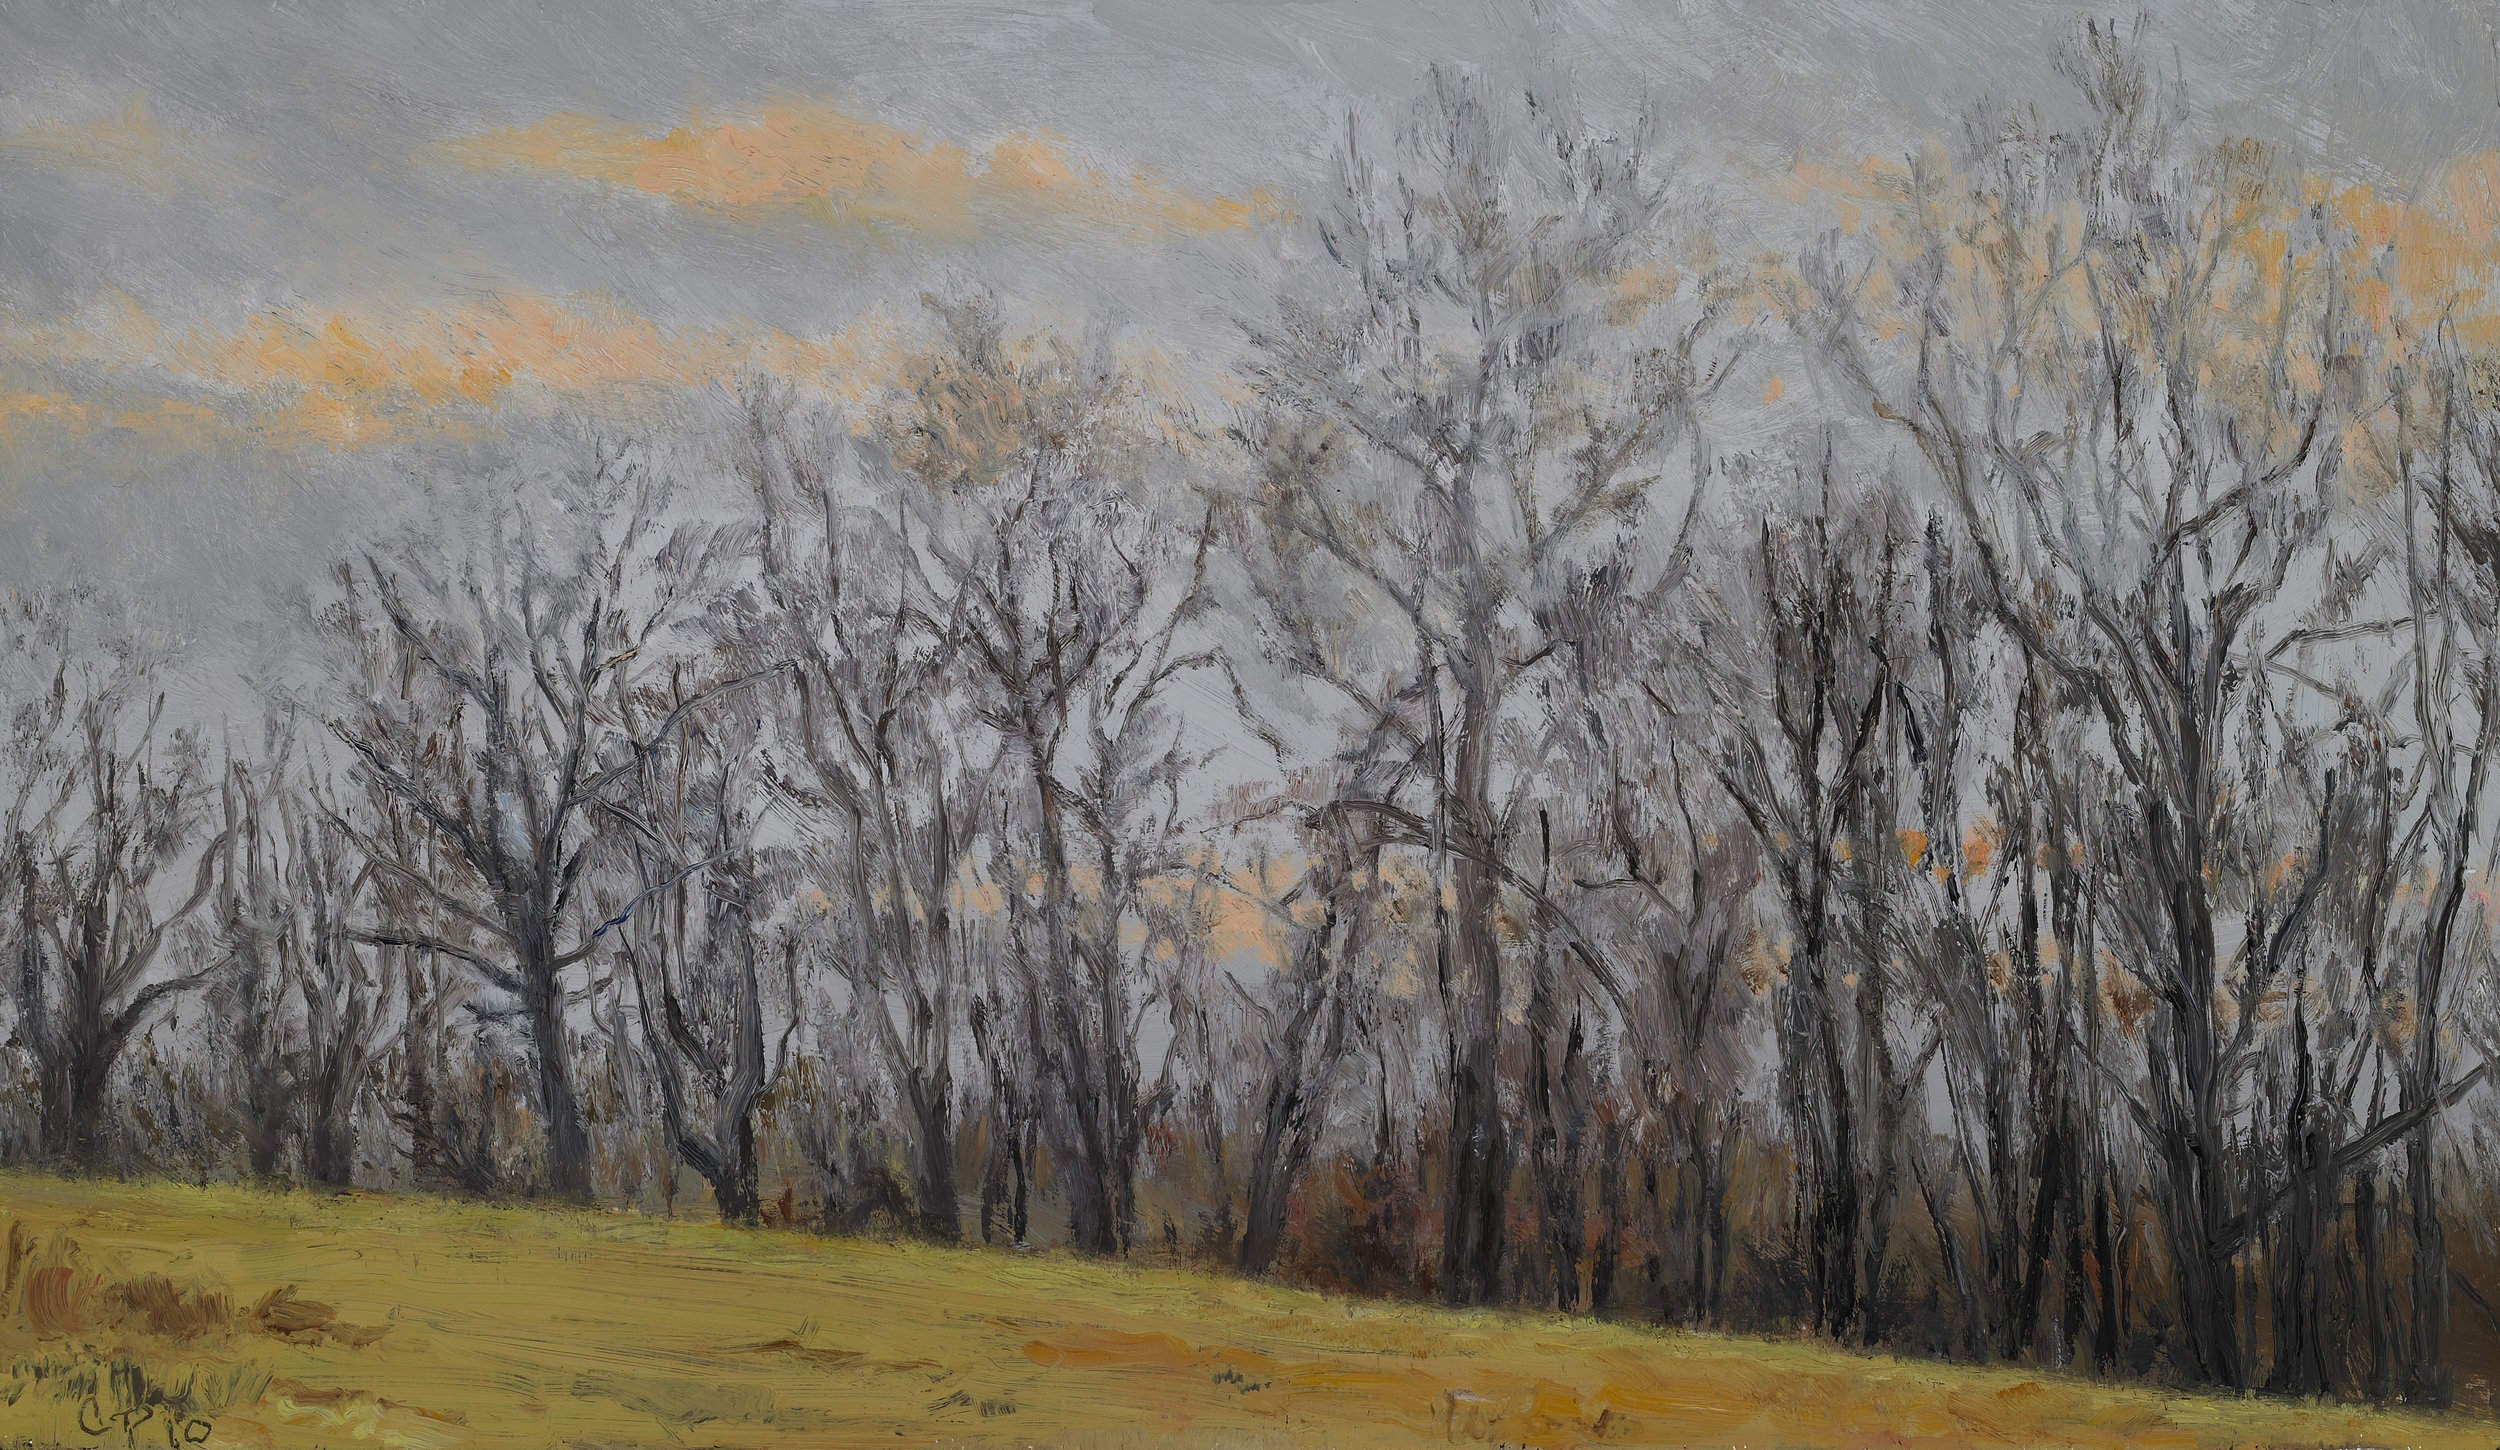   Tree Line , Oil on Wood Panel, 2010, 8 1/4" x 14 1/4" 